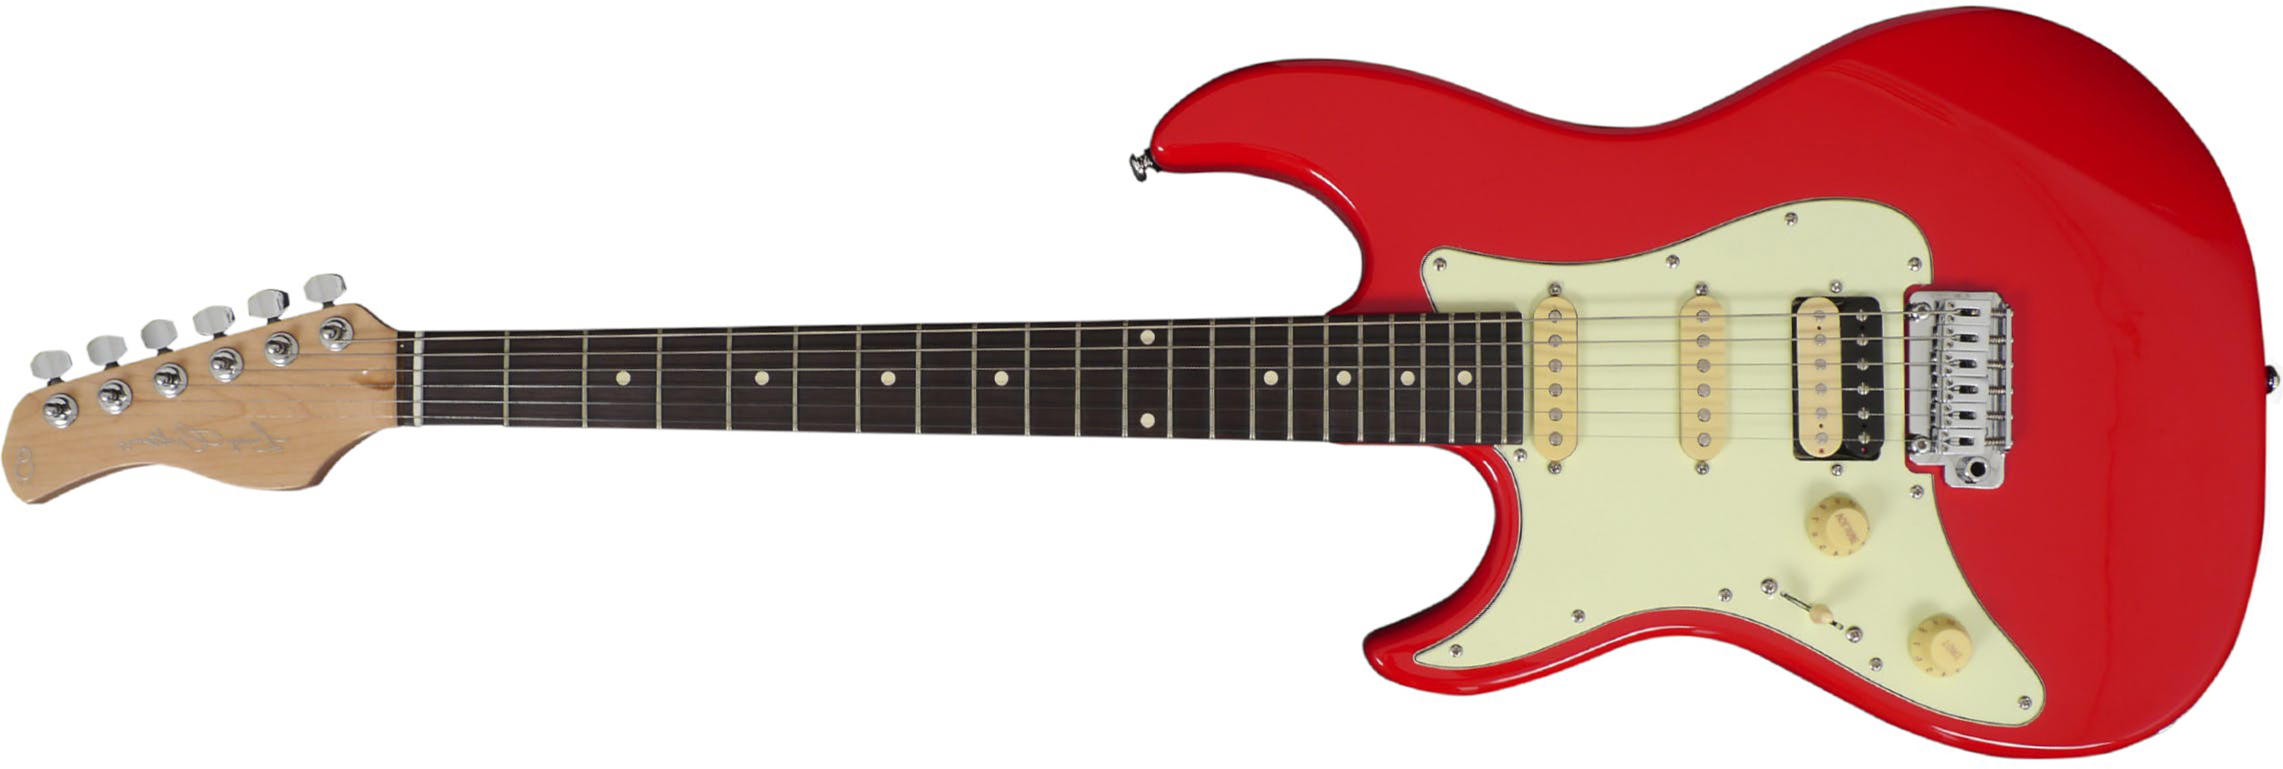 Sire Larry Carlton S3 Lh Signature Gaucher Hss Trem Rw - Dakota Red - Linkshandige elektrische gitaar - Main picture